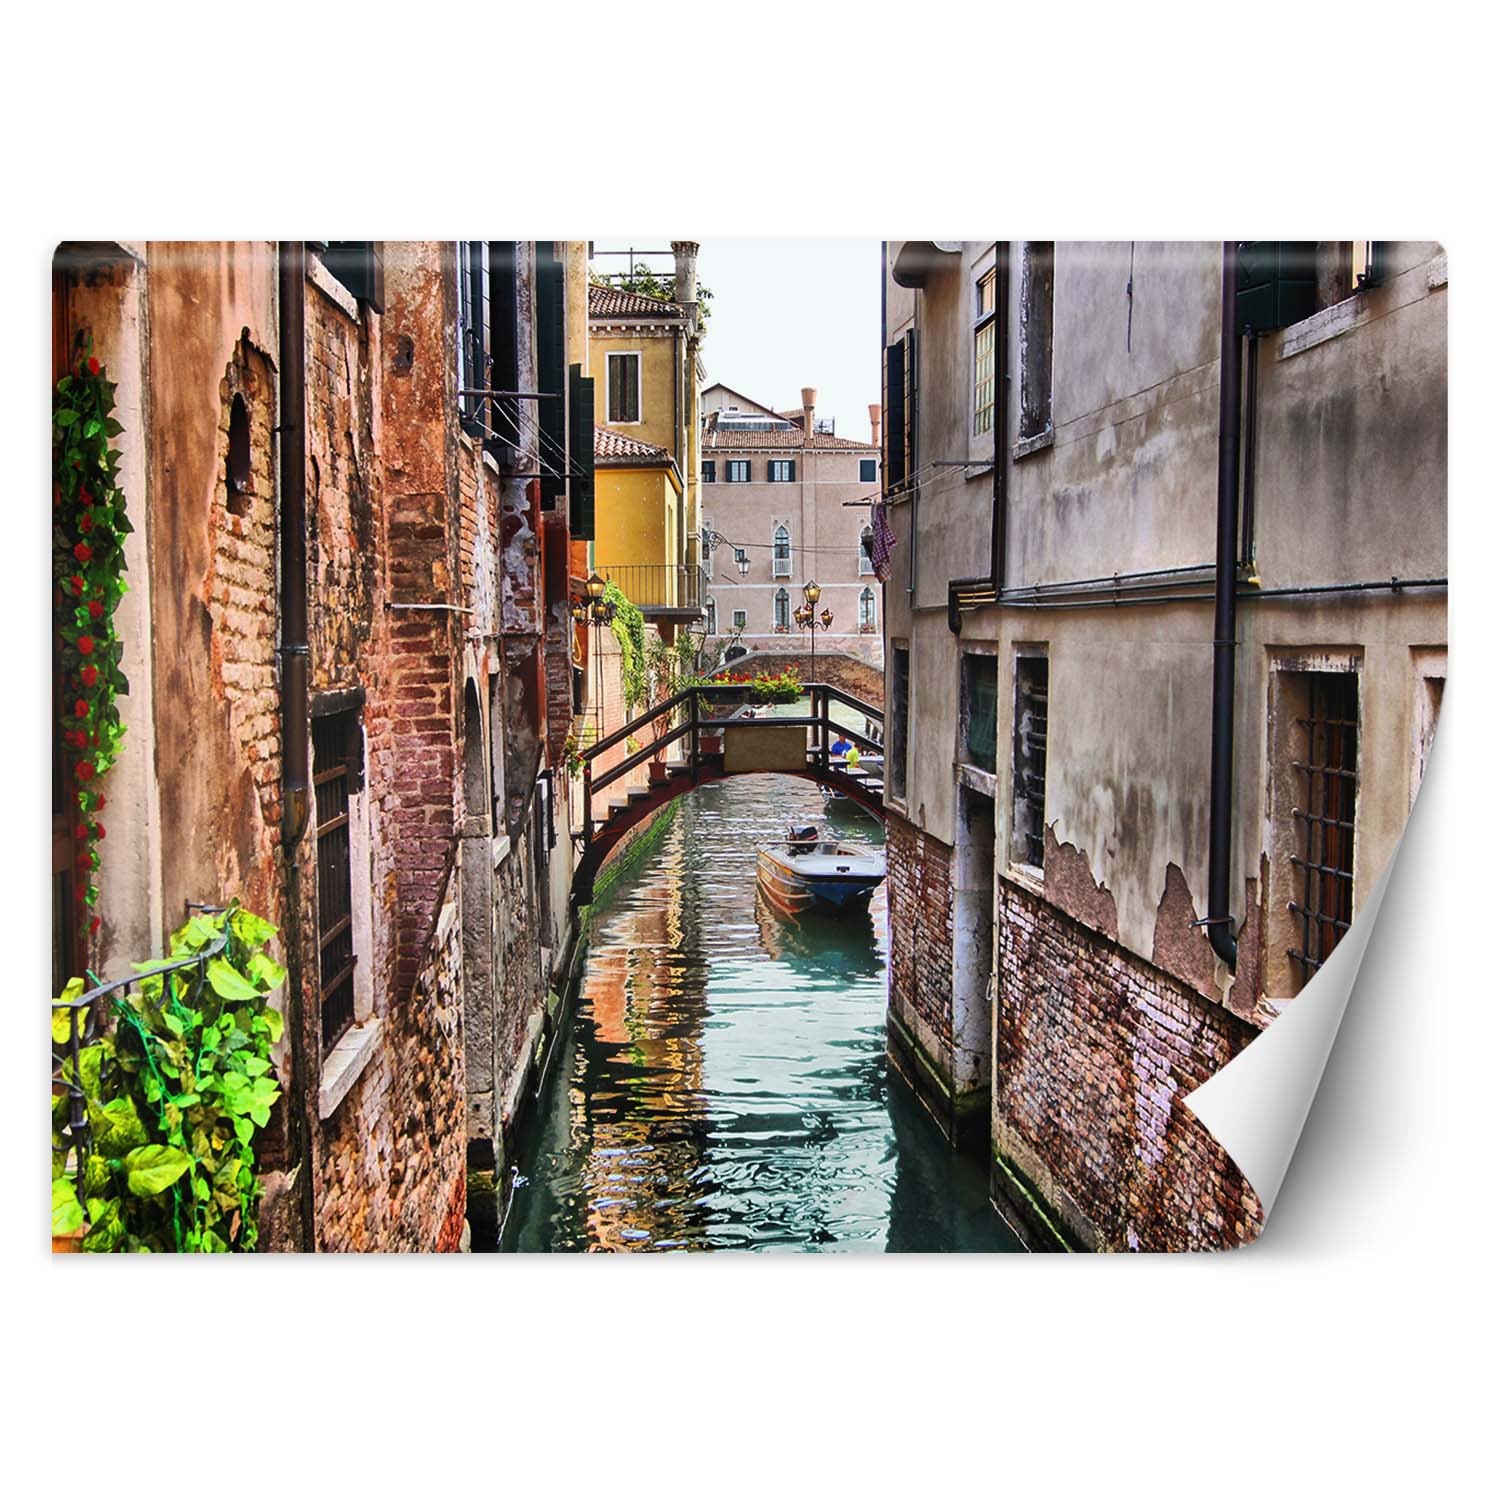 Trend24 – Behang – Venetië – Behangpapier – Fotobehang – Behang Woonkamer – 200x140x2 cm – Incl. behanglijm